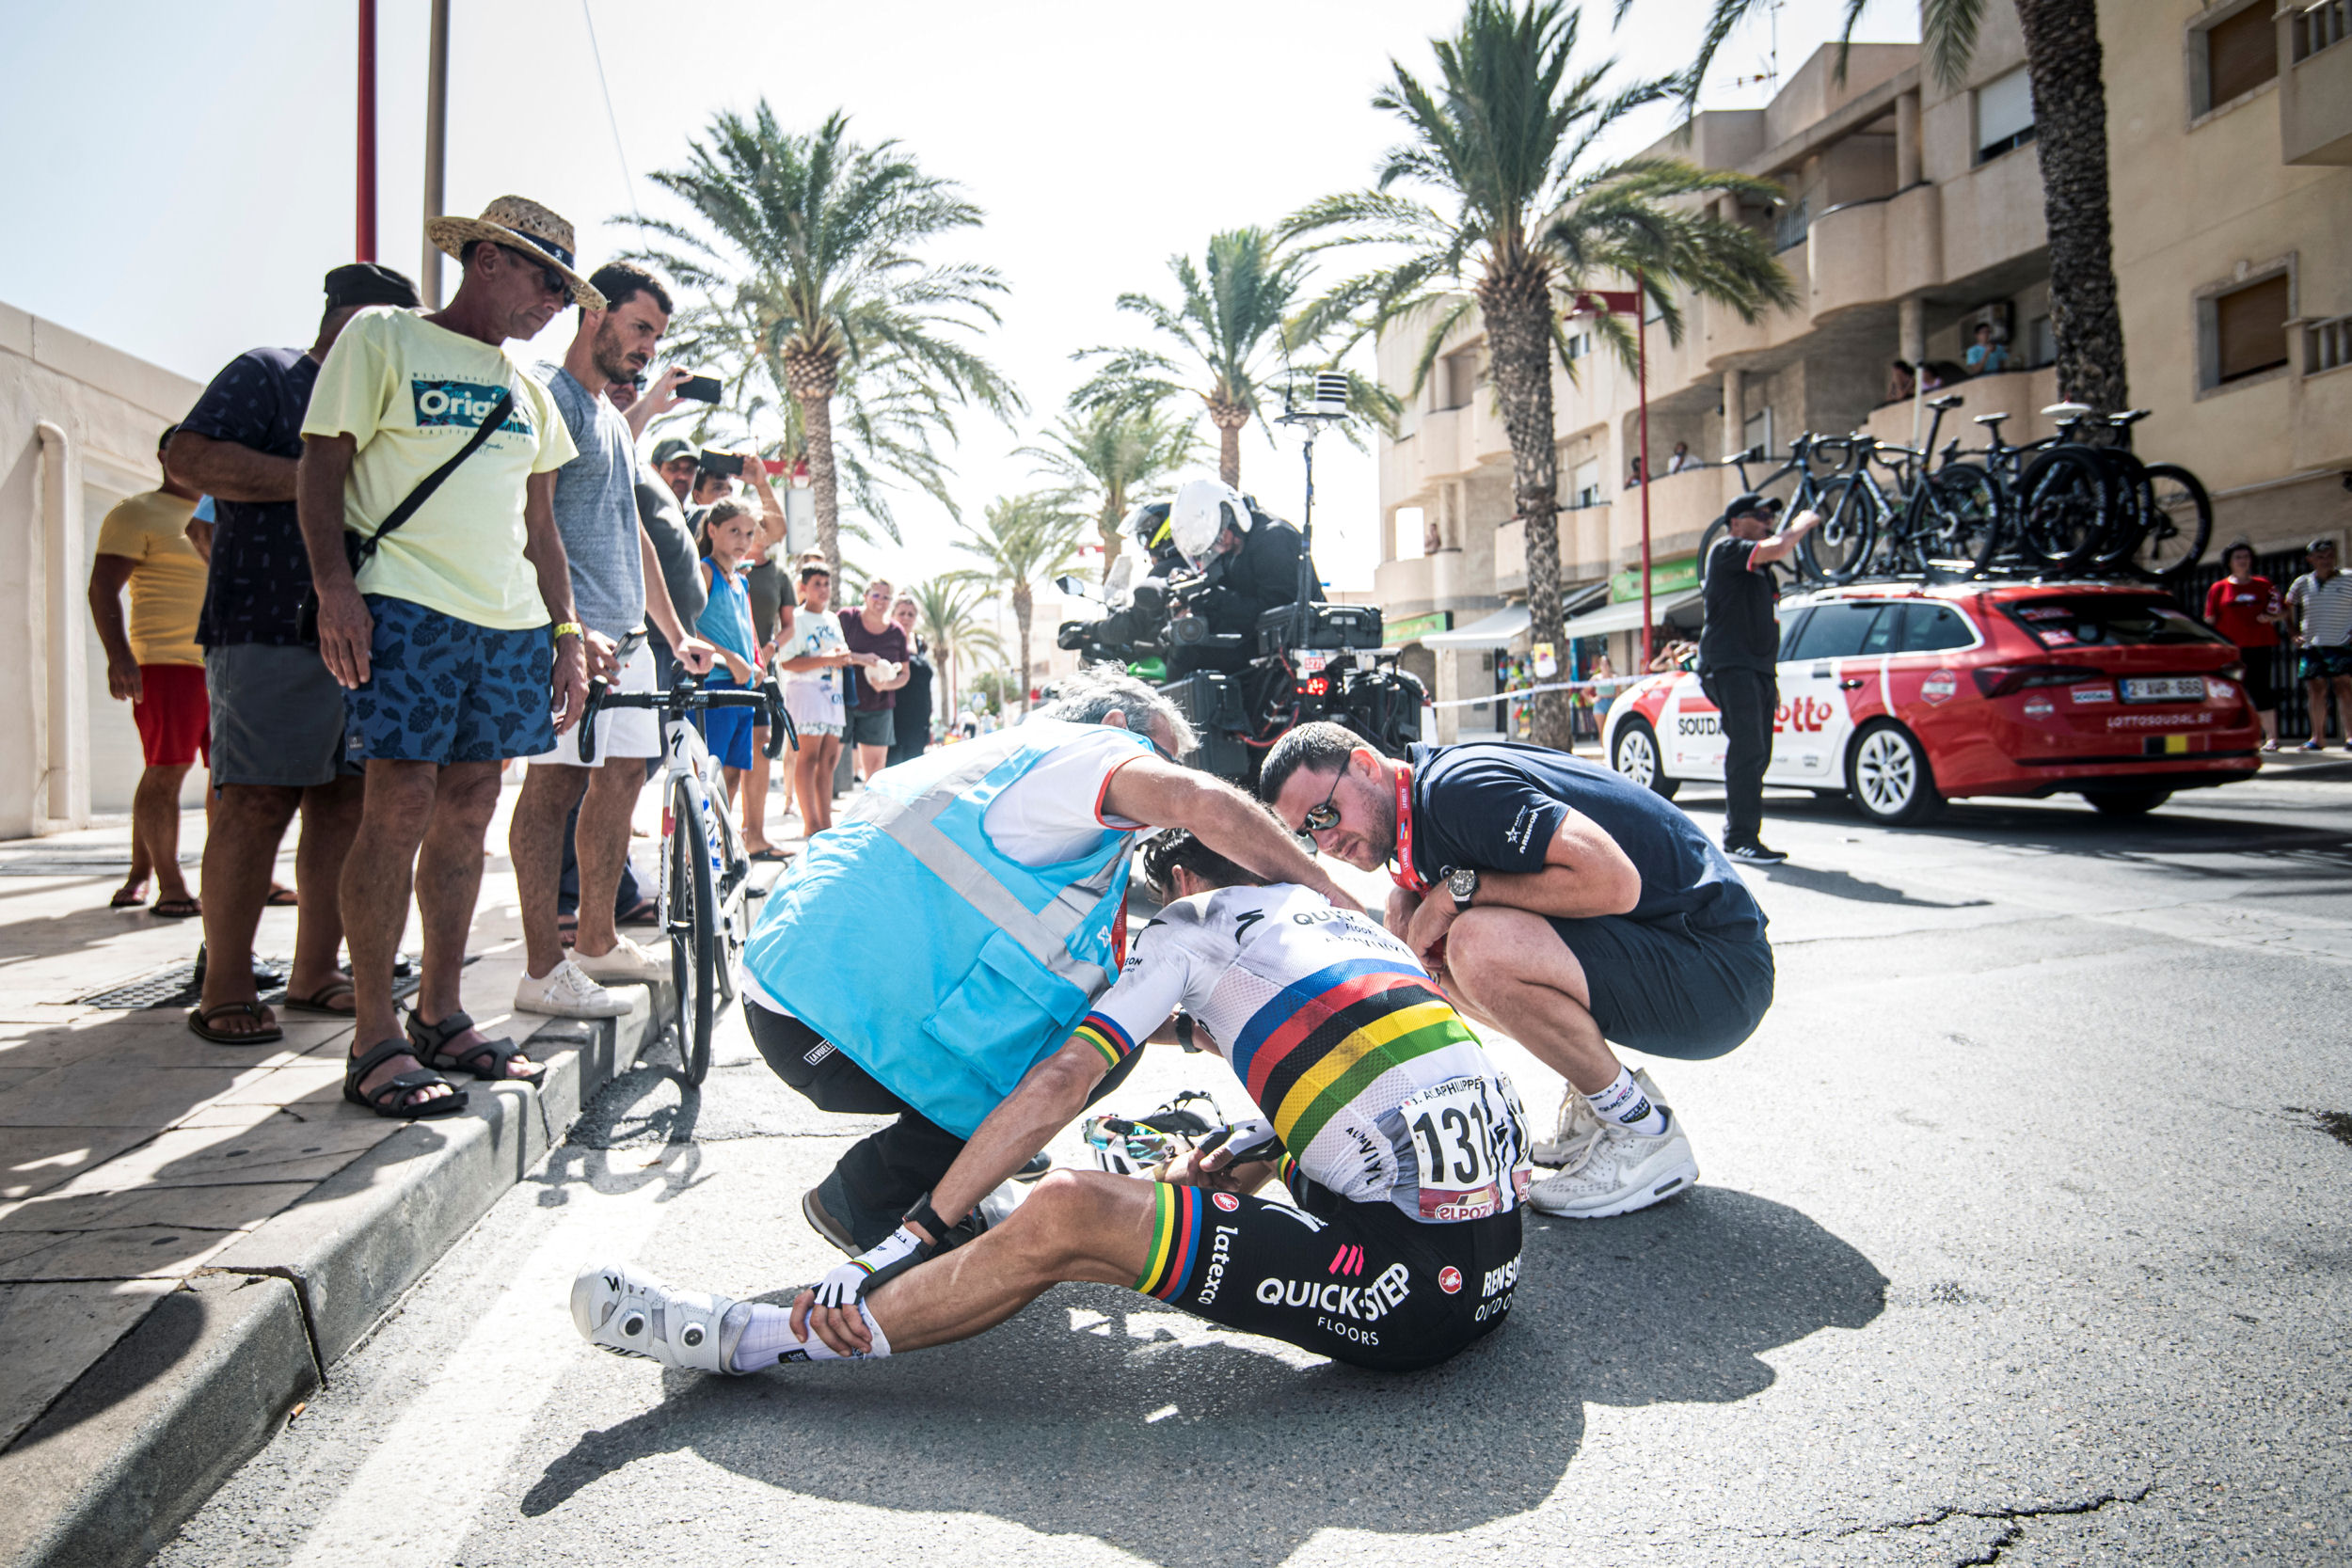 Siedzący na asfalcie Julian Alaphilippe, po upadku na 11. etapie Vuelta a Espana